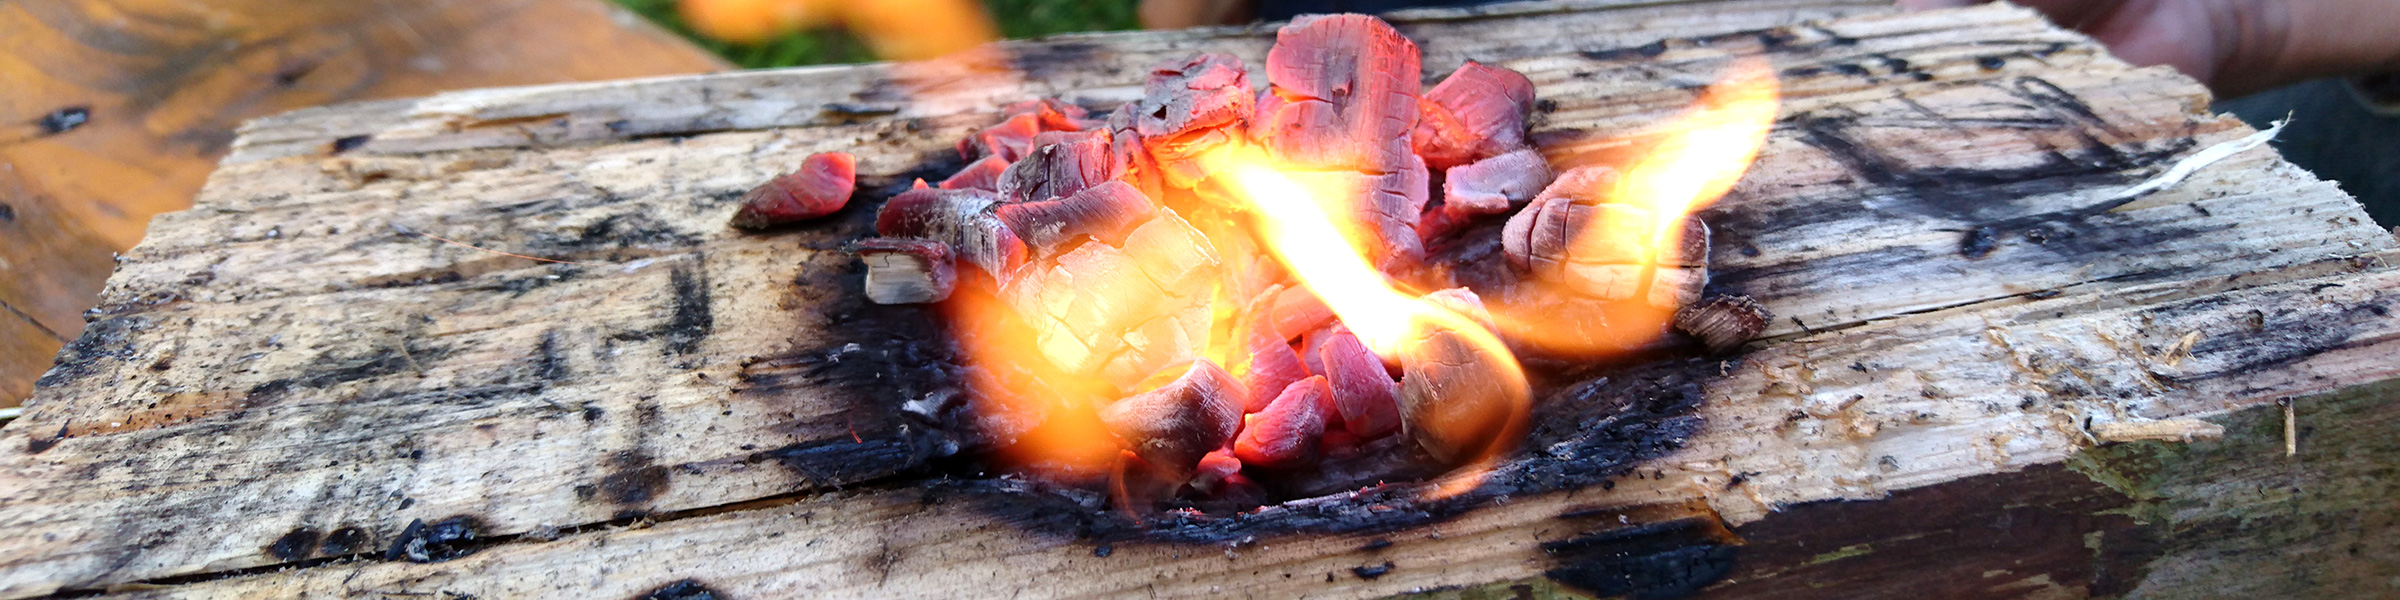 Brennende Glut liegt auf einem Holzklotz und brennt eine kleine Vertiefung als Schüssel ins Holz